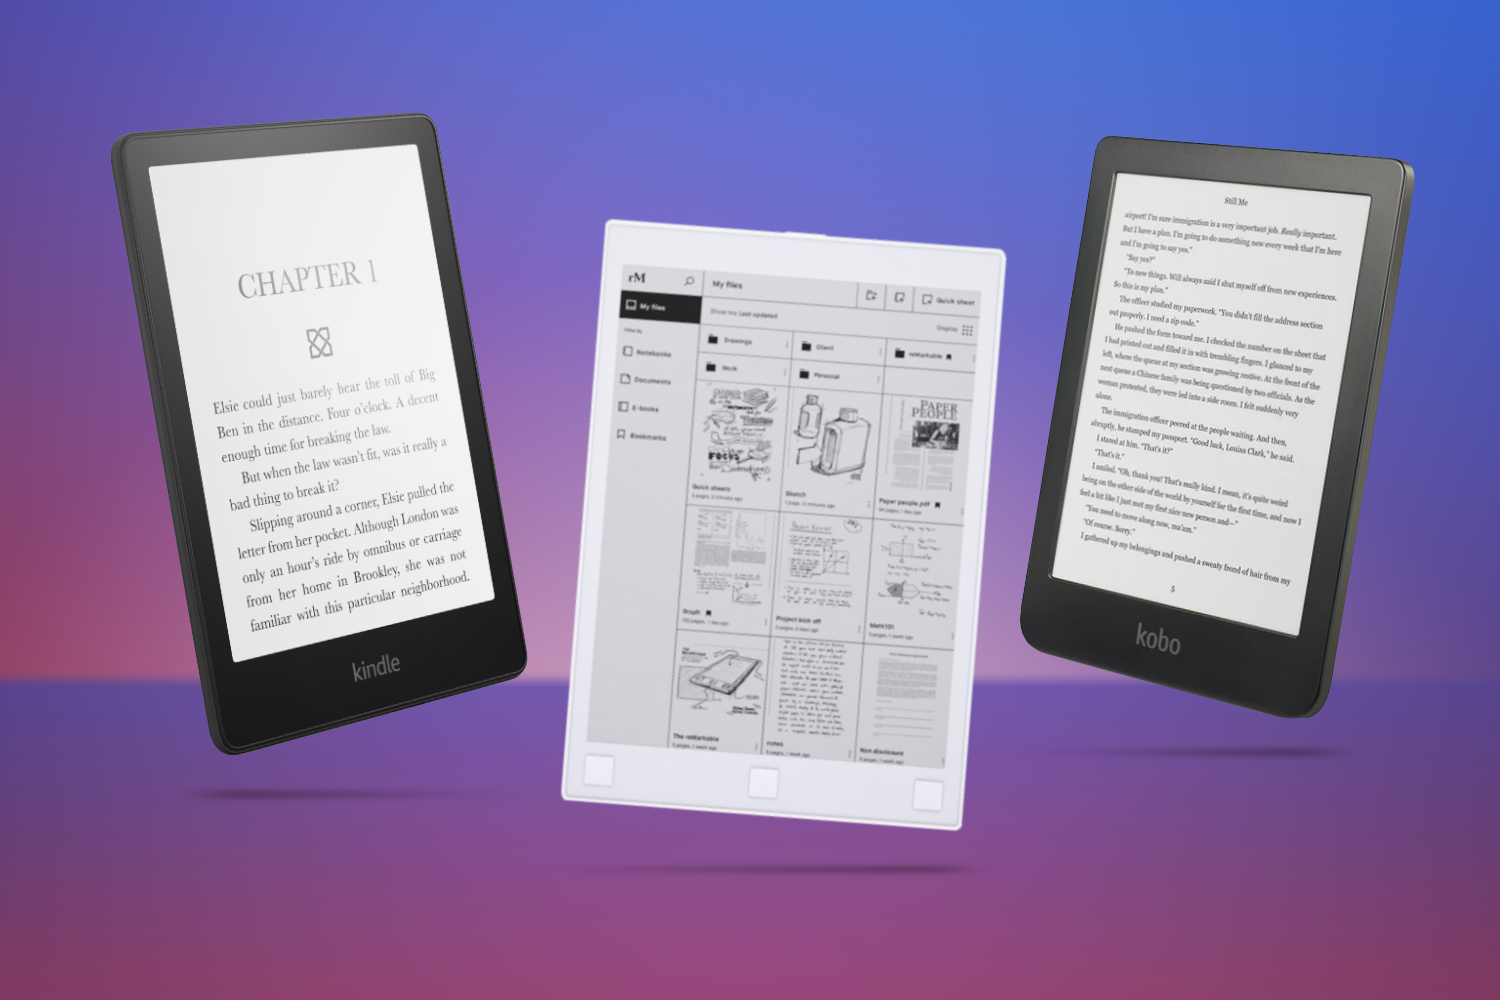 Plak opnieuw Annoteren Willen Best e-readers: top Kindle, Kobo and E Ink tablet devices